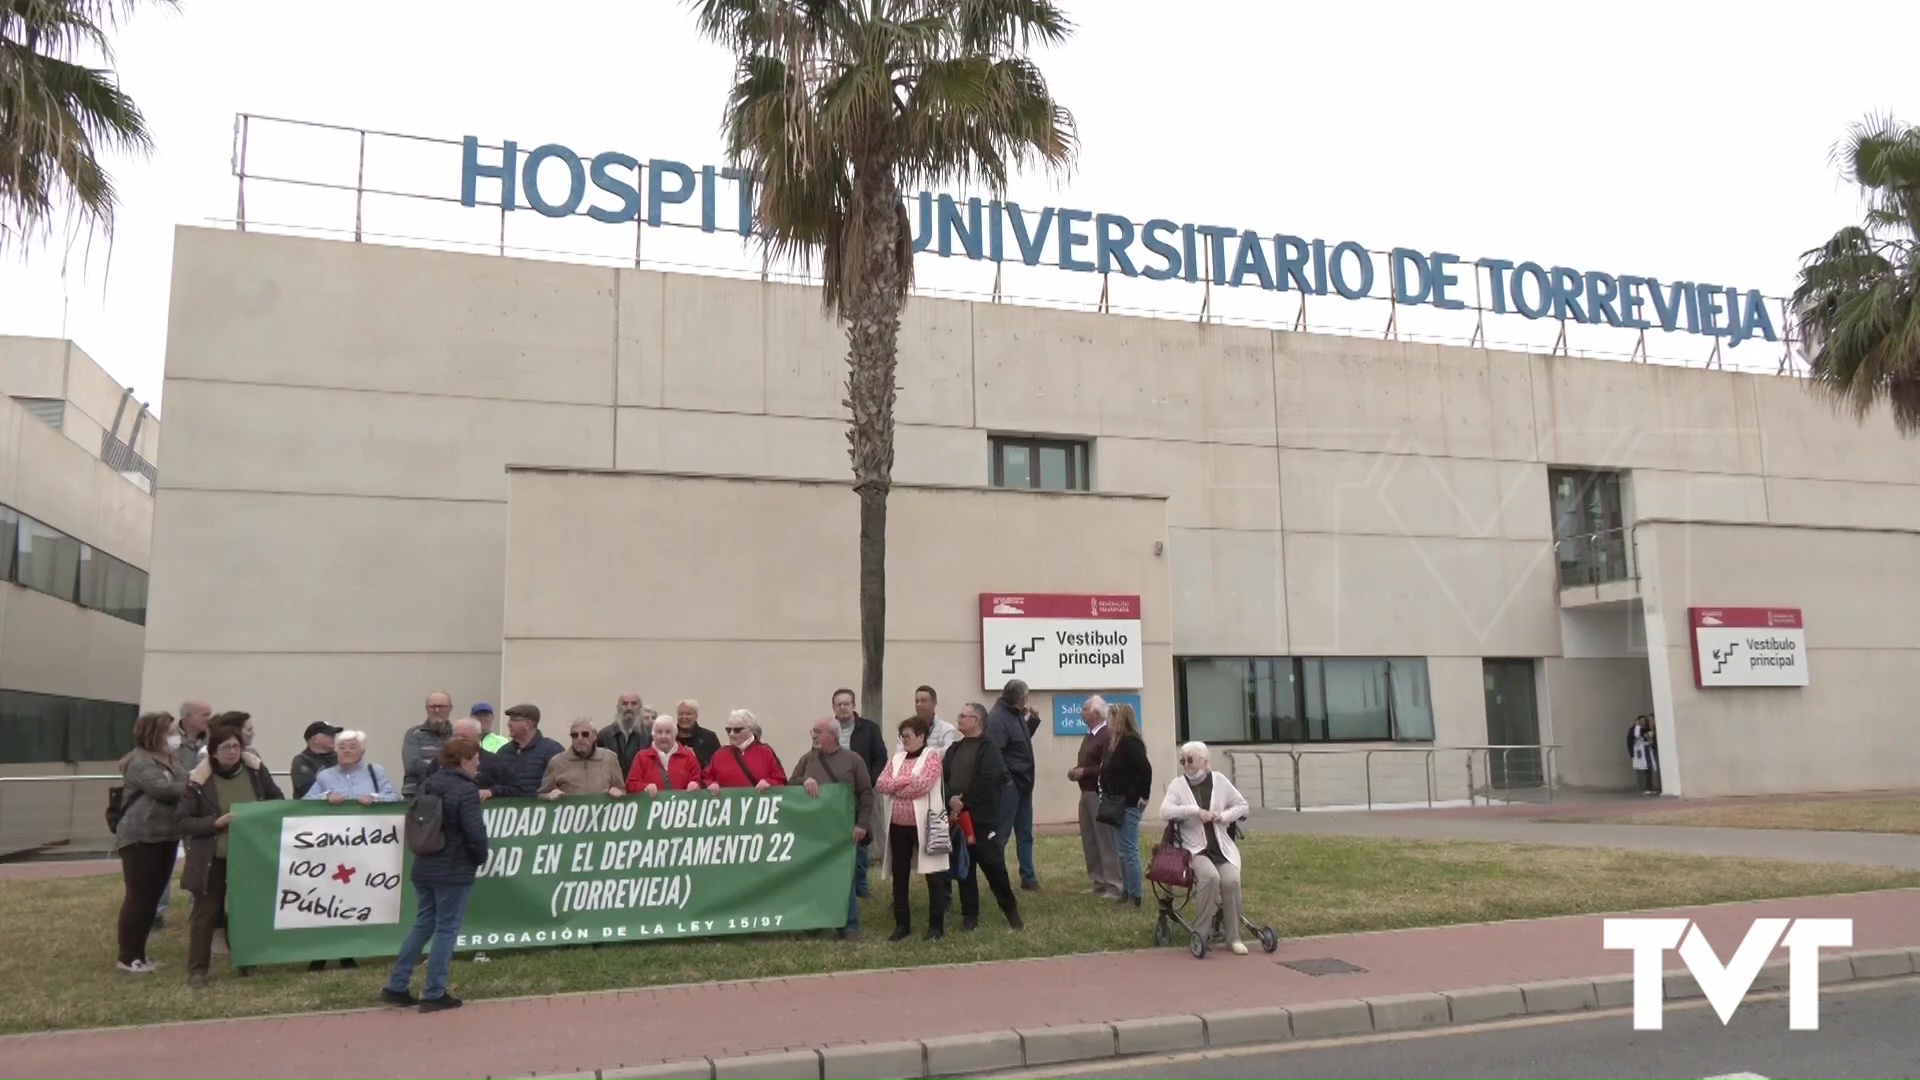 Imagen de Sanidad reduce a una décima parte el presupuesto del anterior gobierno valenciano para obras del Hospital de Torrevieja según la Plataforma por la Sanidad 100x100 pública 